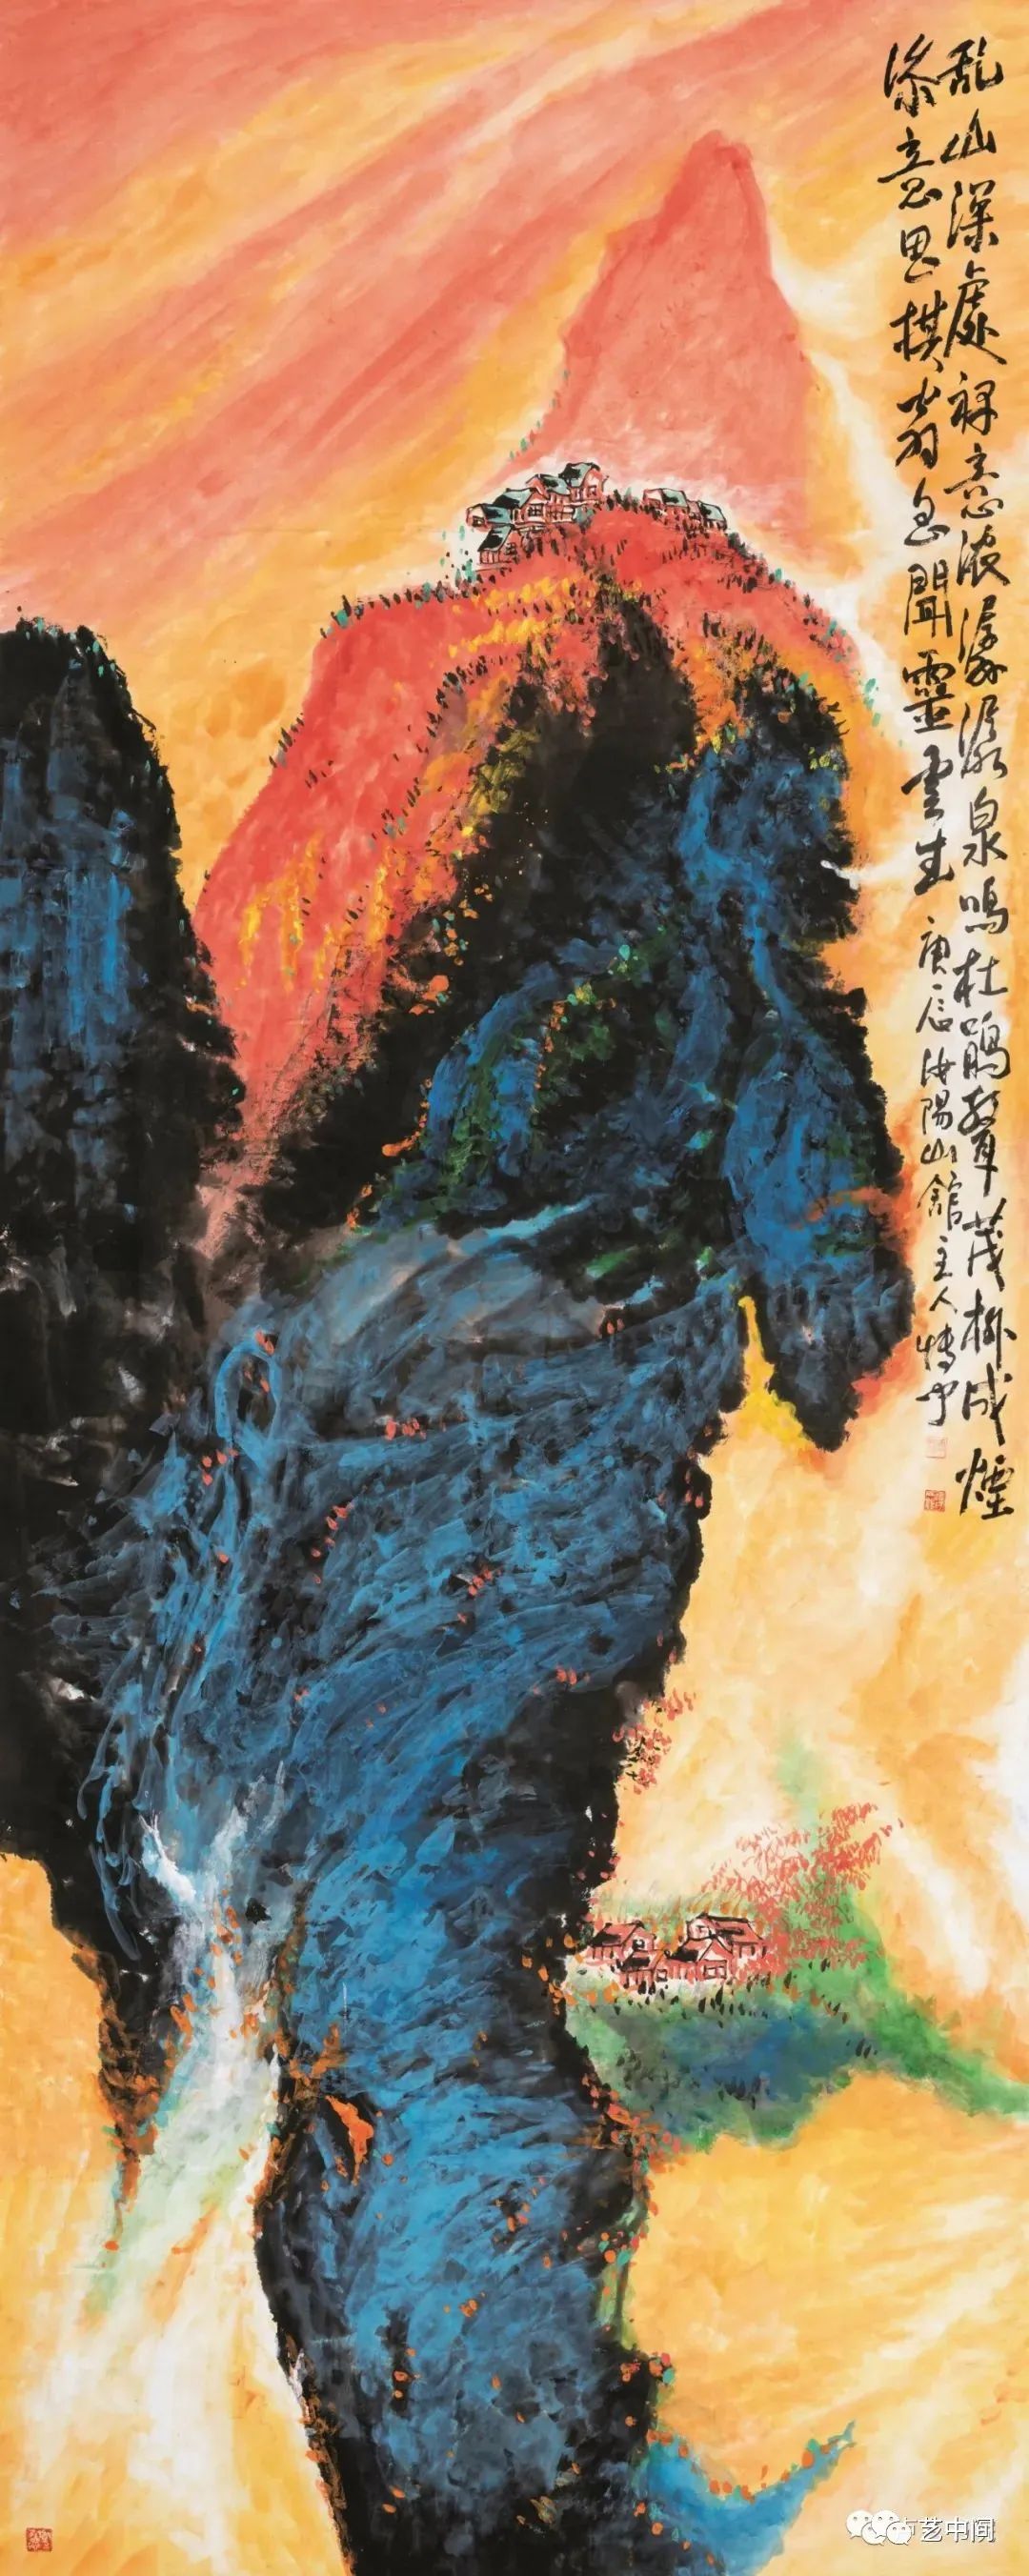 孙博文山水画的现代转型丨以视觉的超现实性向自然之不朽致敬